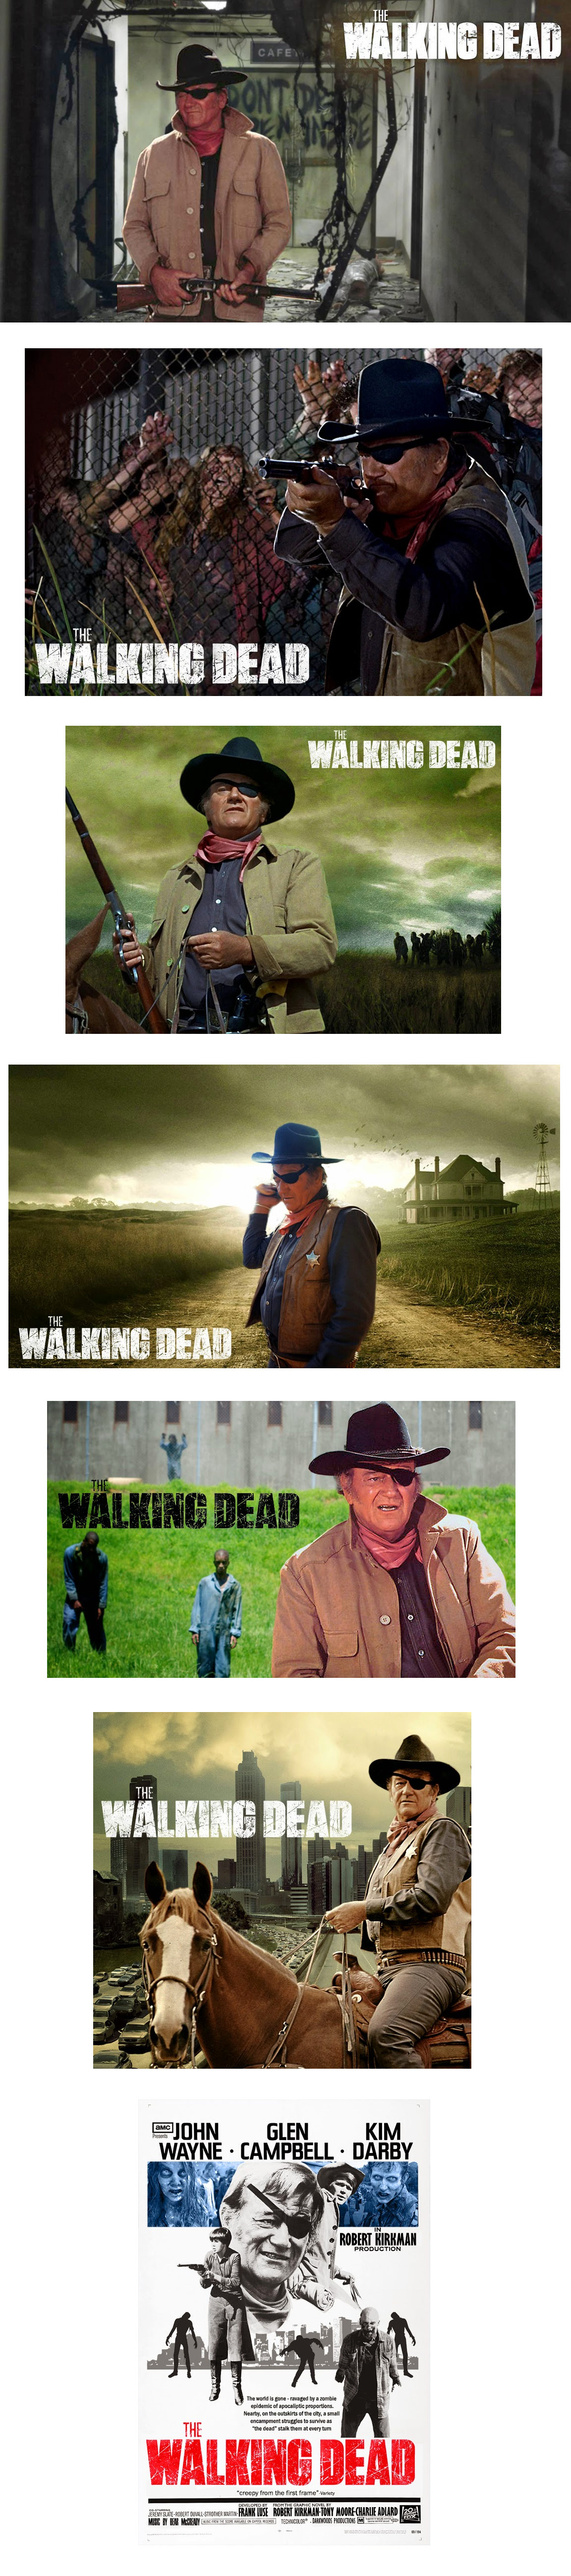 John Wayne protagonista en The Walking Dead